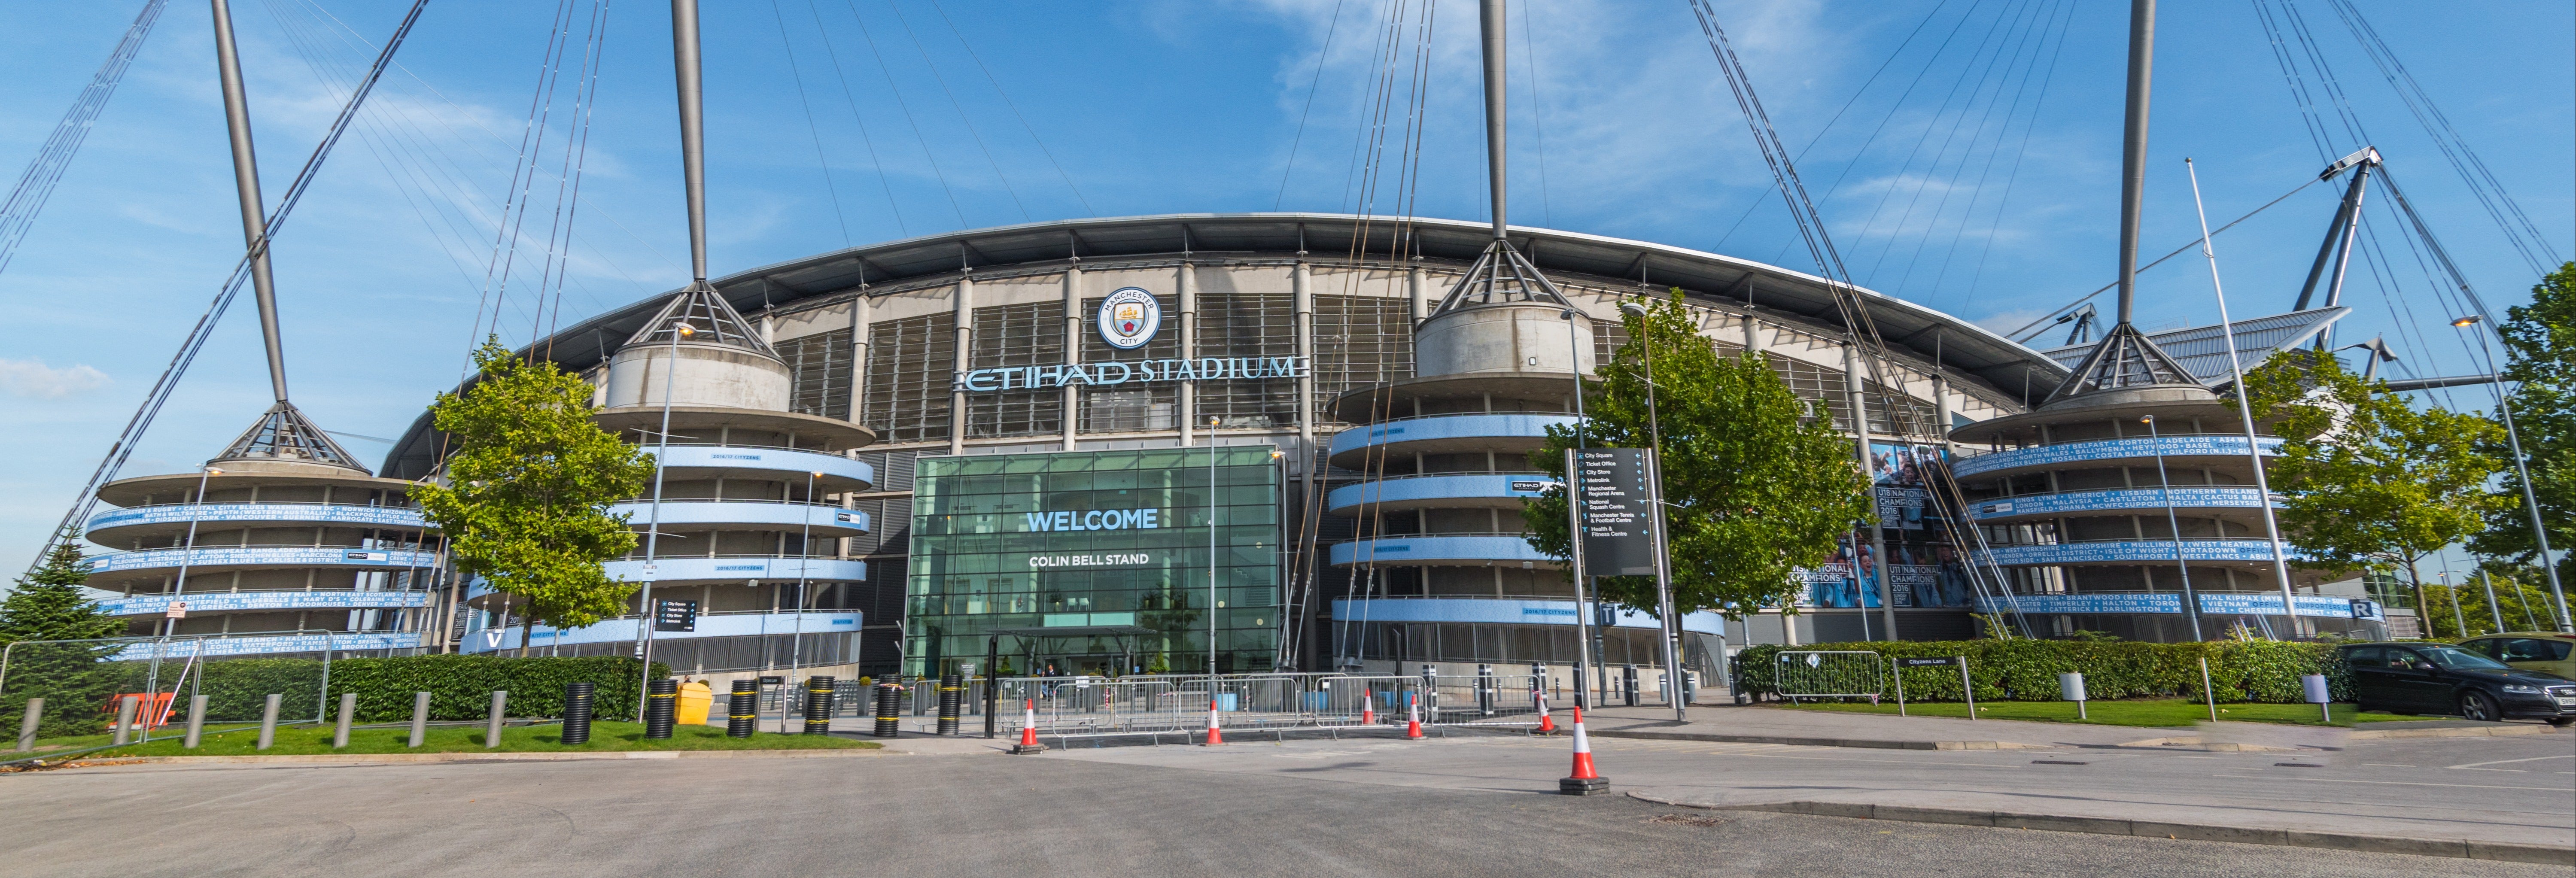 Tour pelo estádio do Manchester City